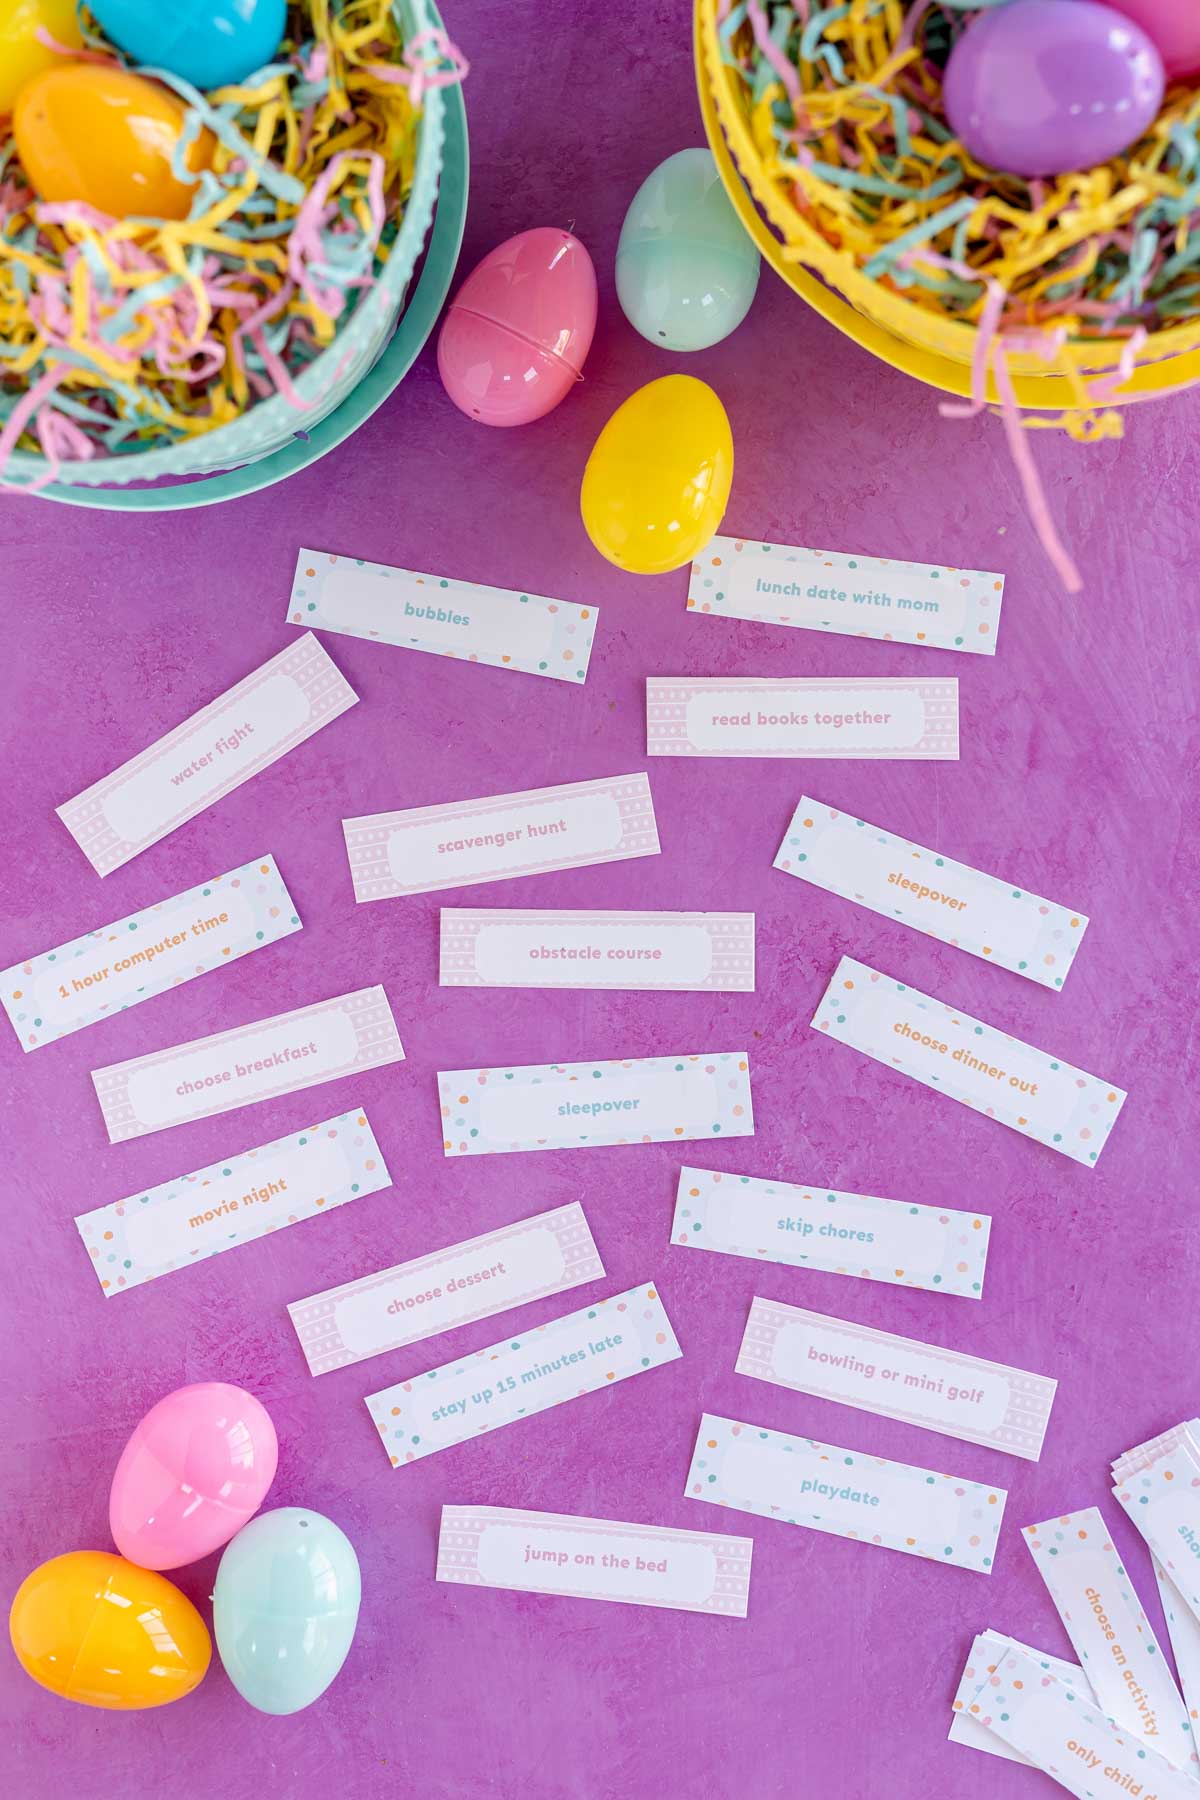 printed out rewards for Easter egg hunts